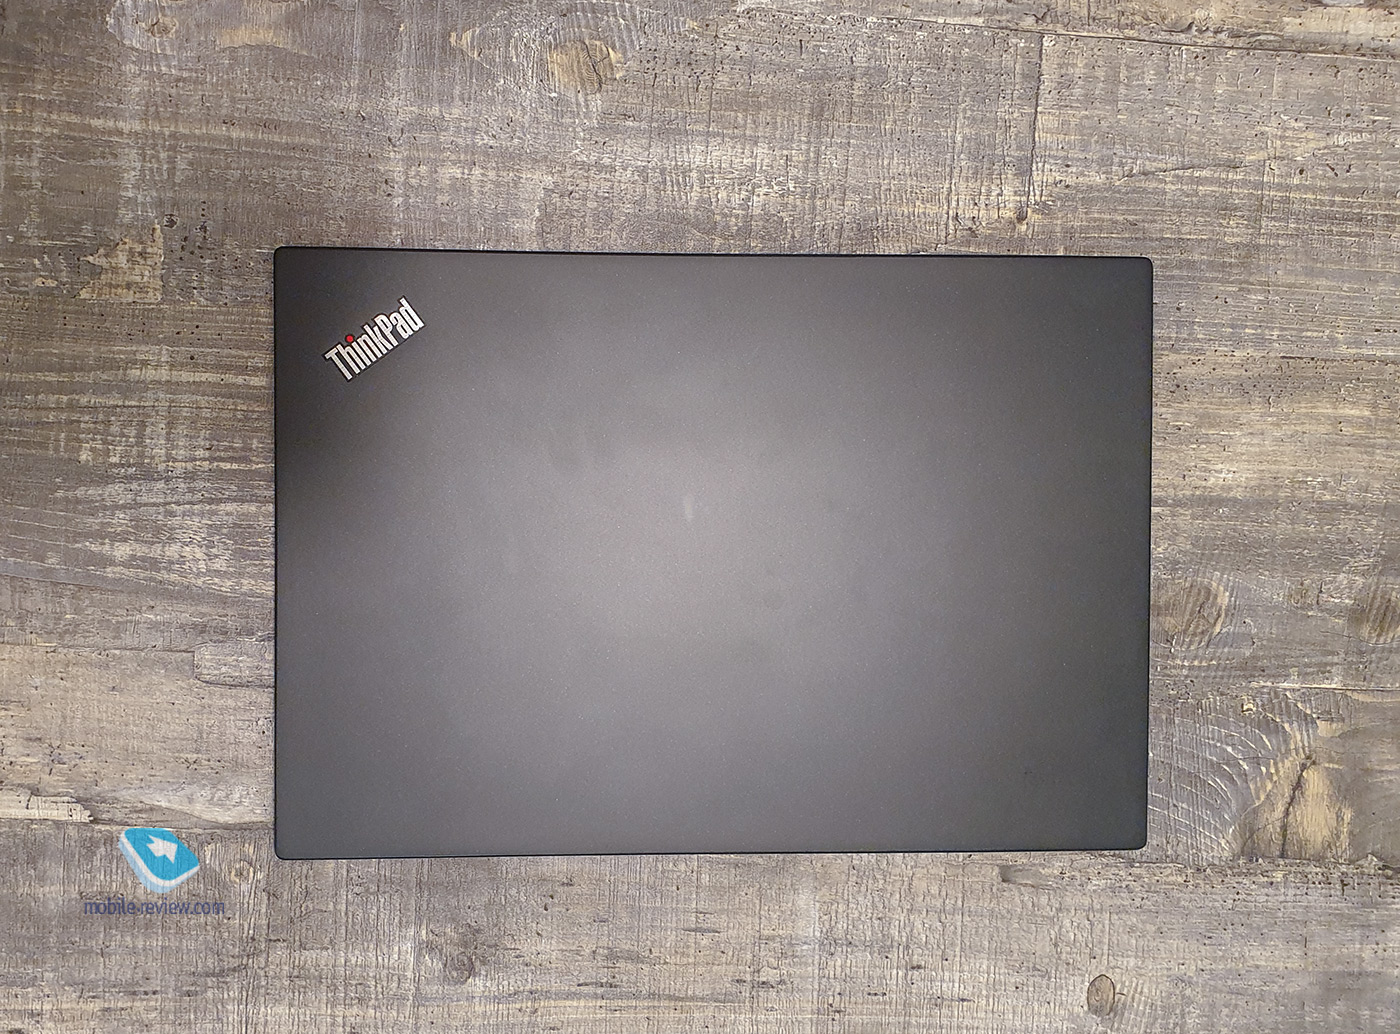  Lenovo ThinkPad T14s.    ThinkPad